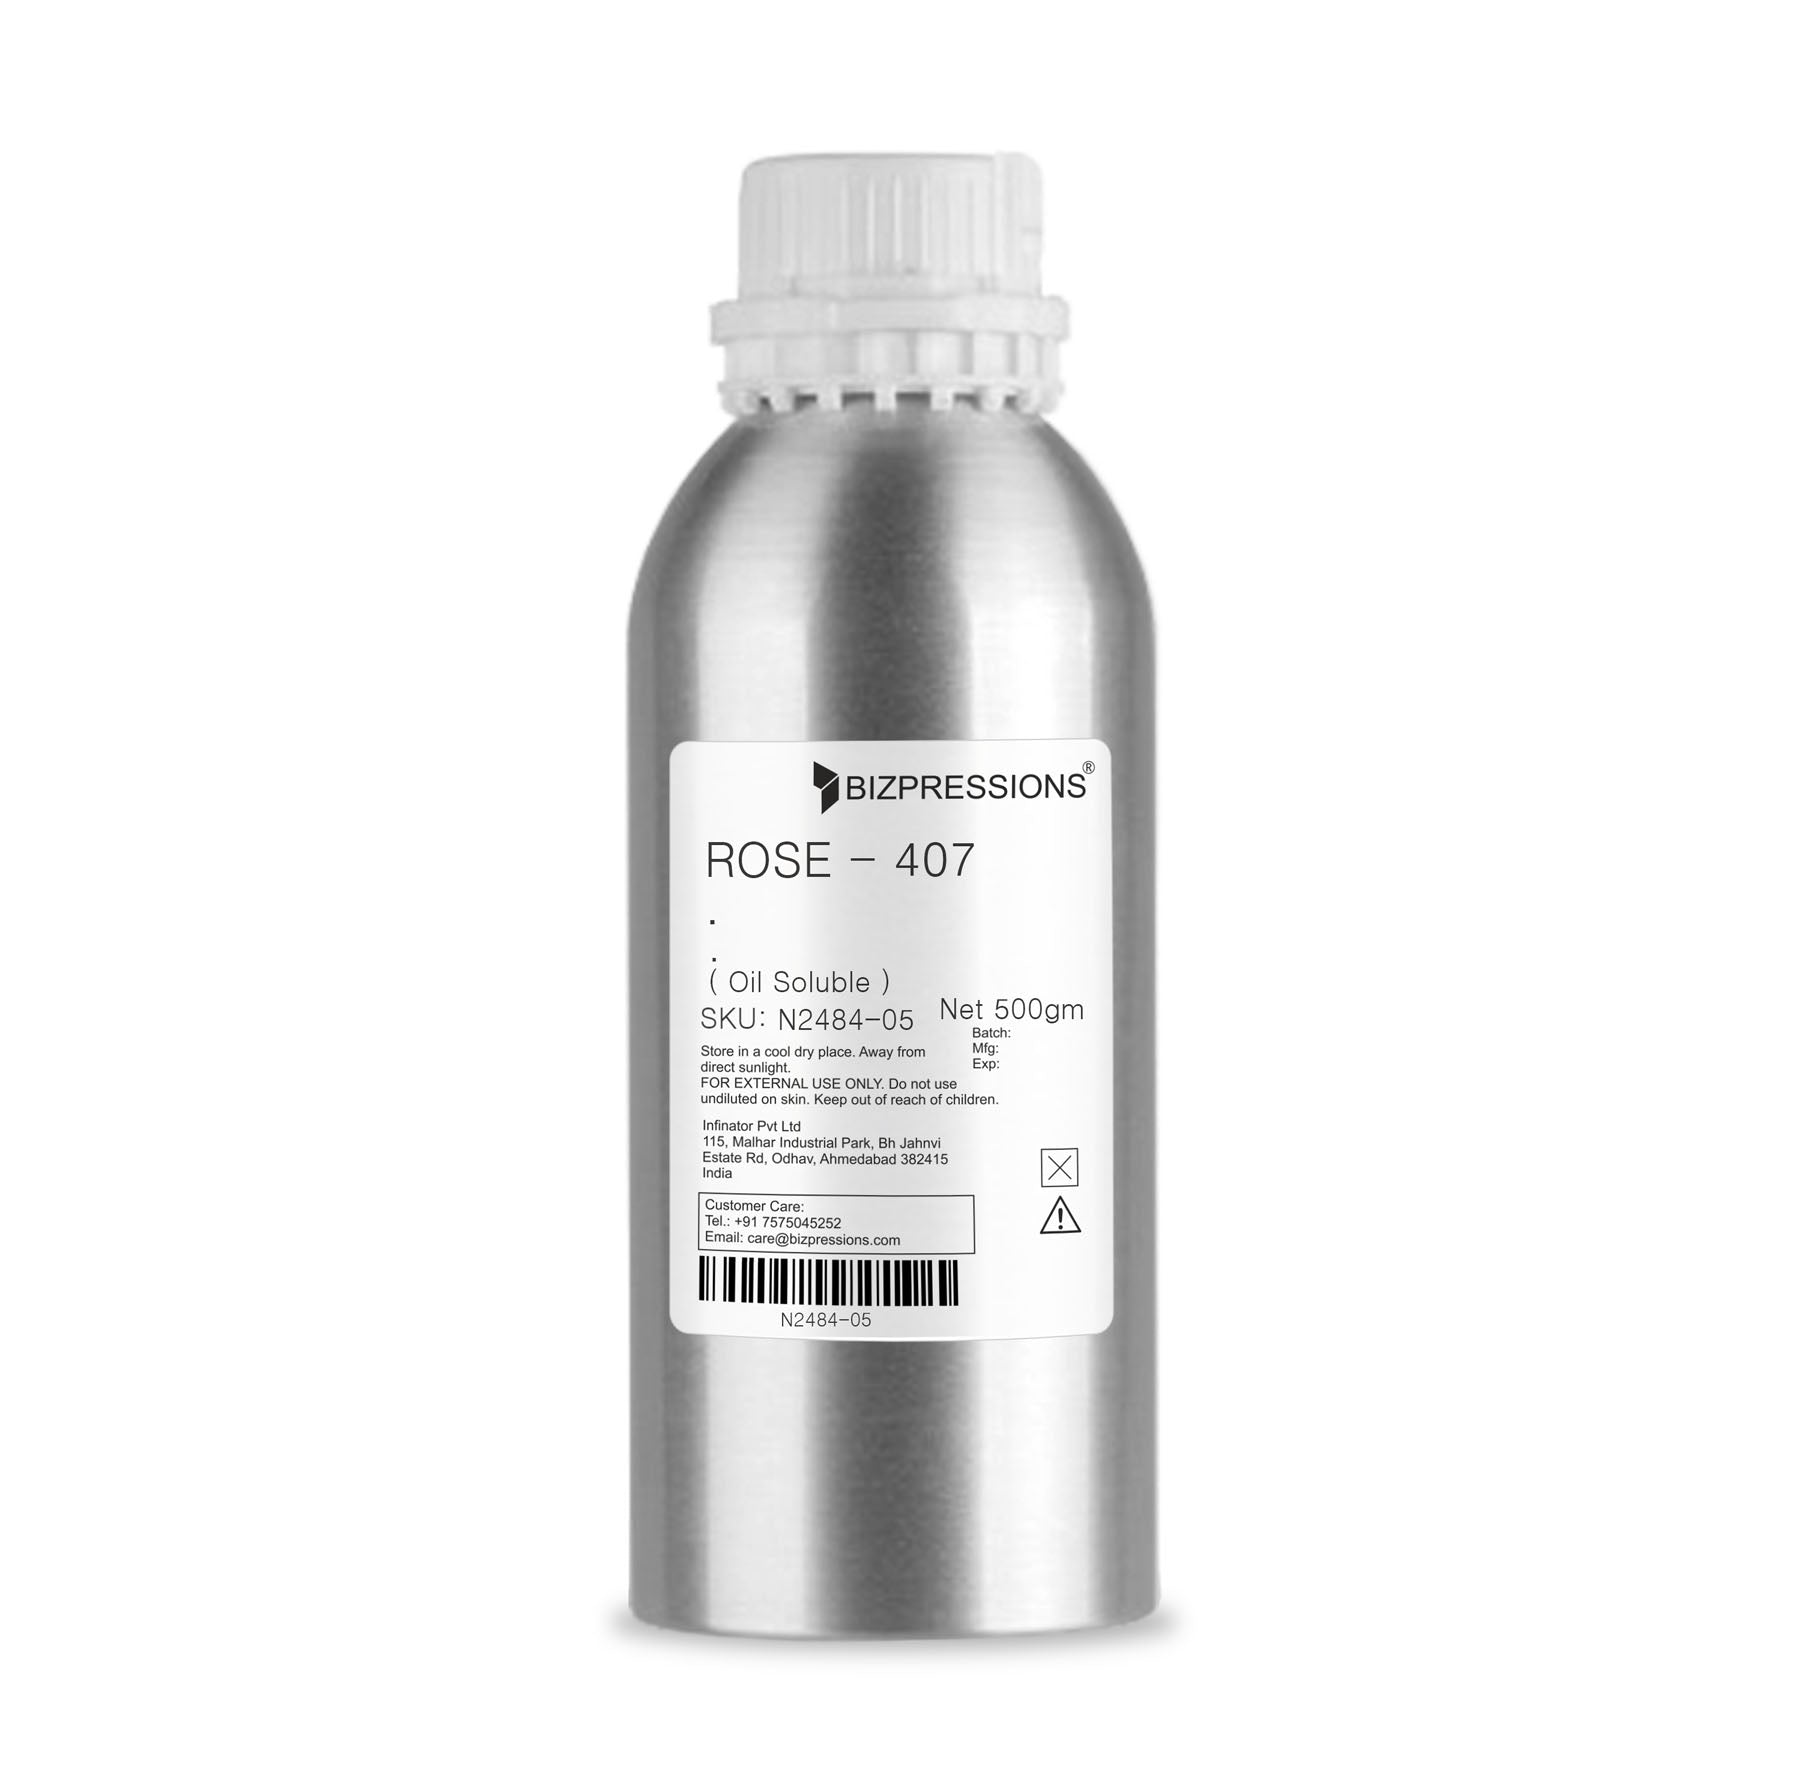 ROSE - 407 - Fragrance ( Oil Soluble ) - 500 gm